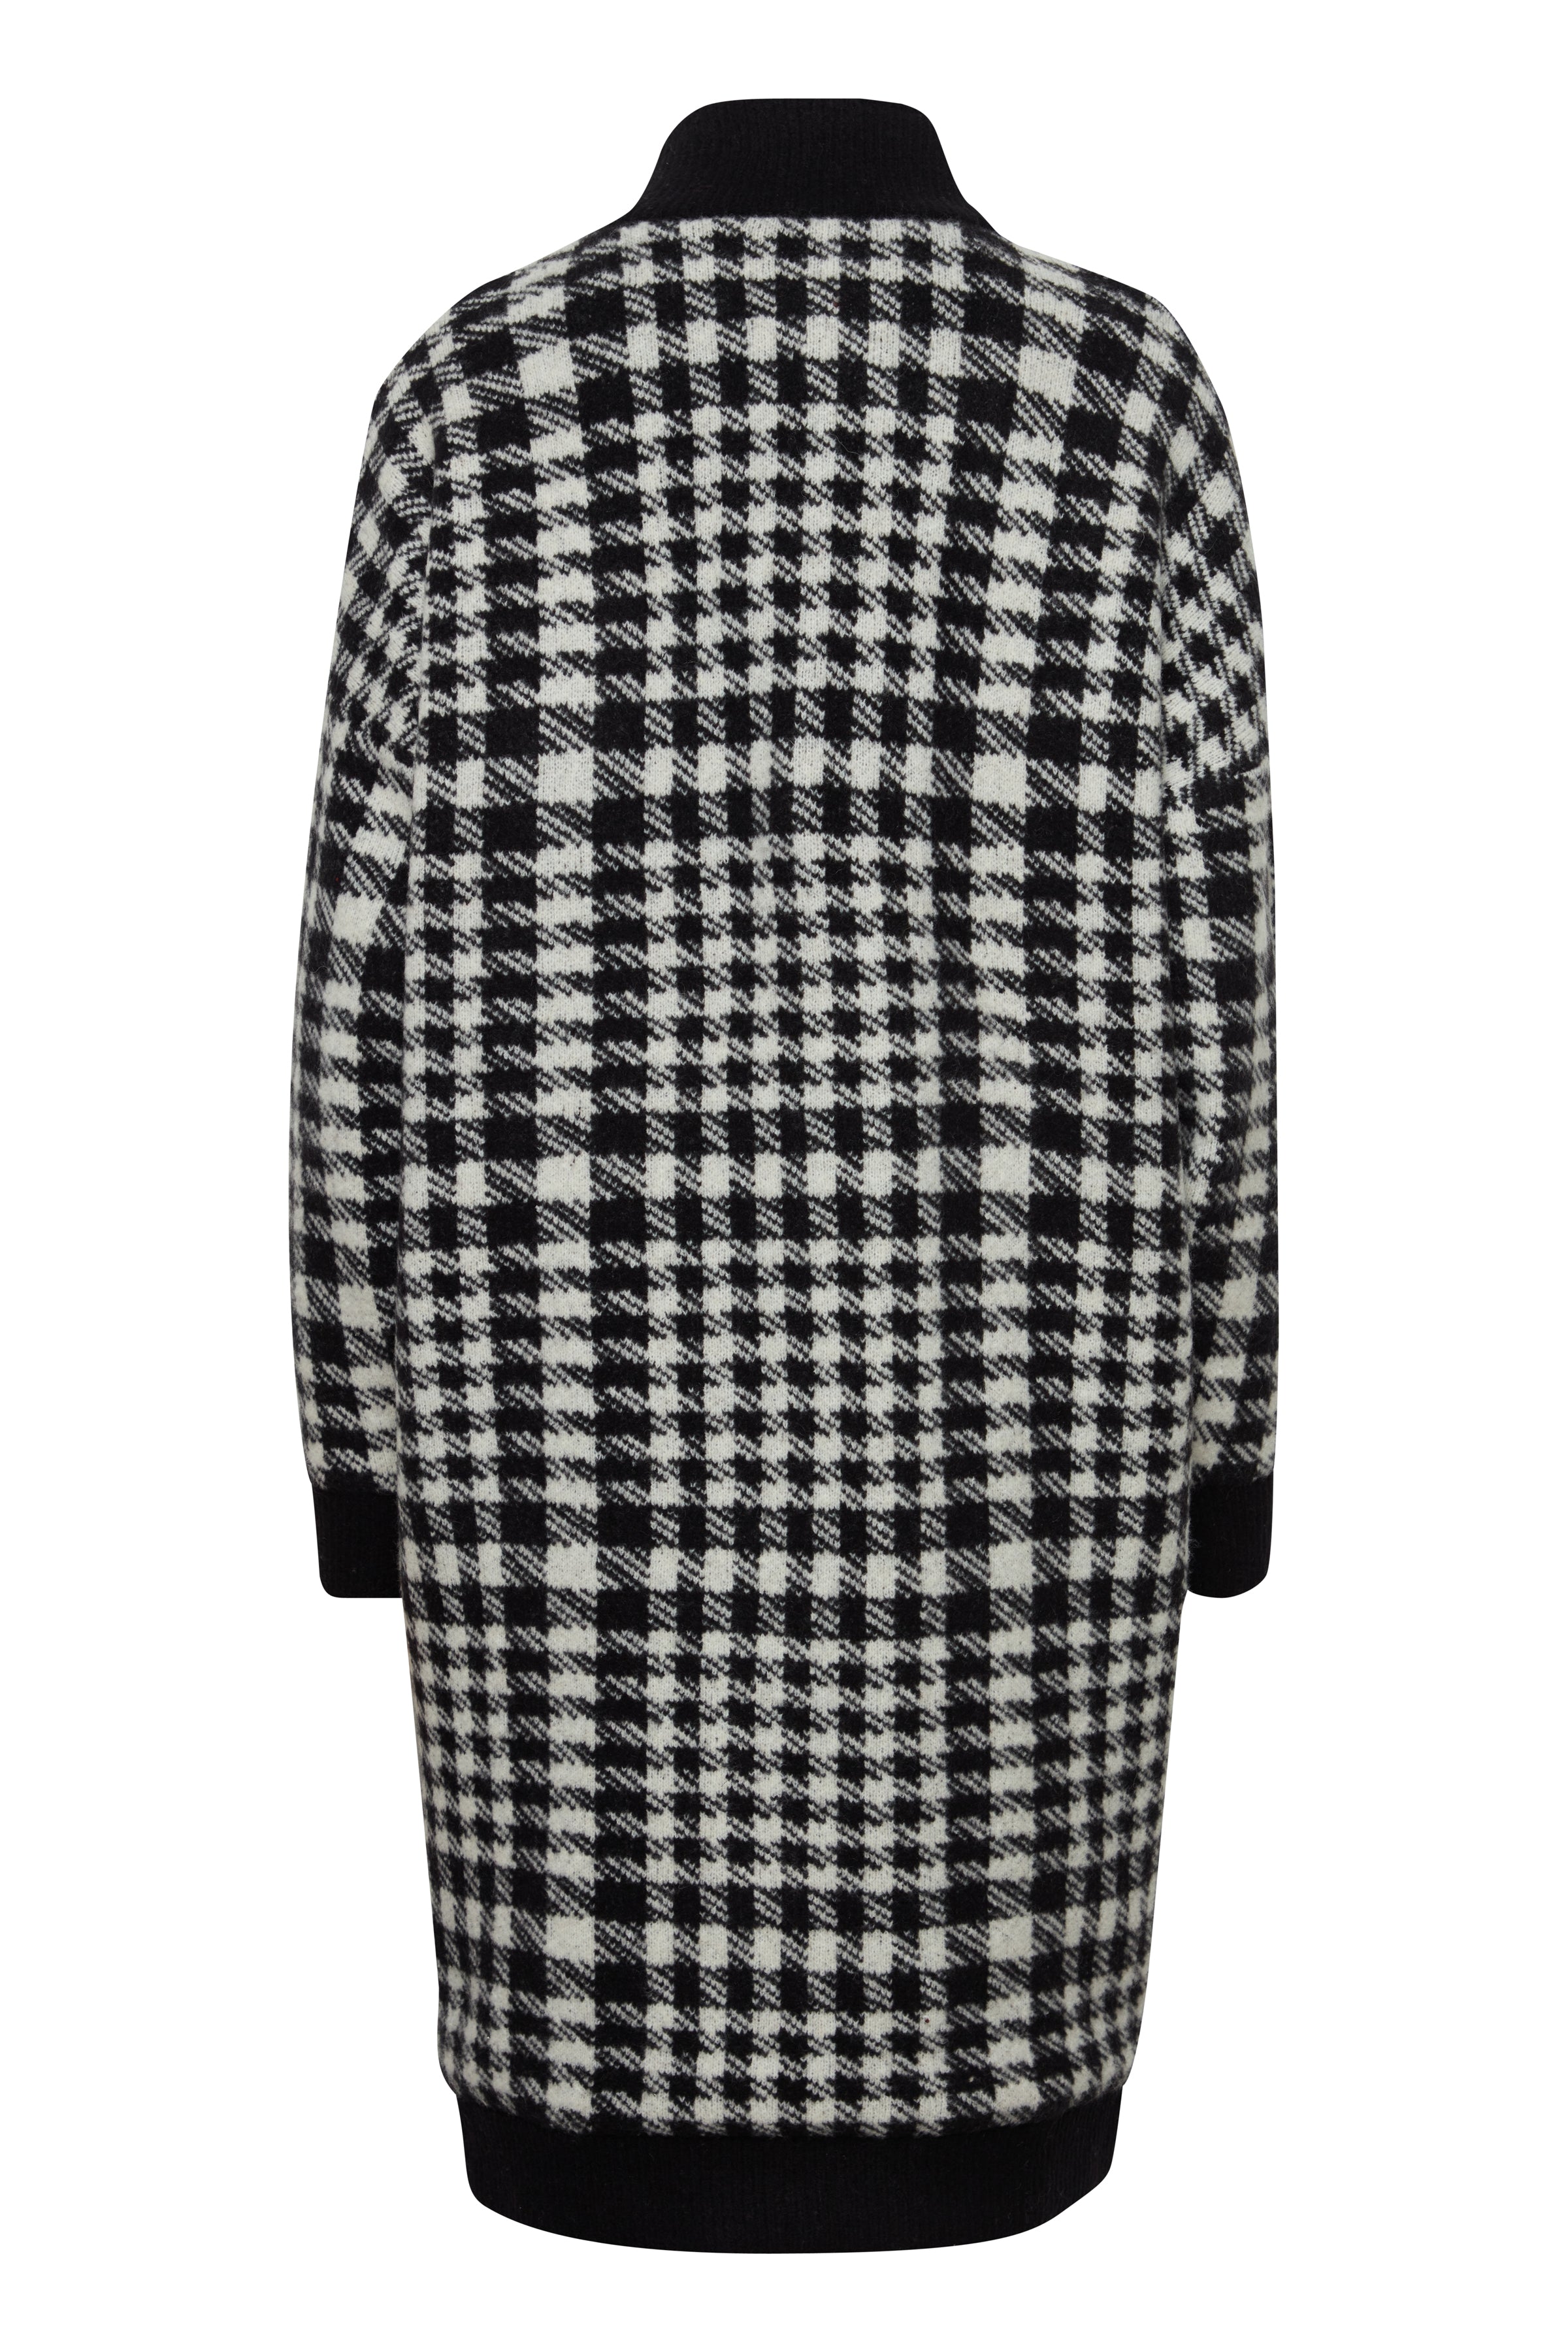 Ihazito black and white checkered coat | Ichi